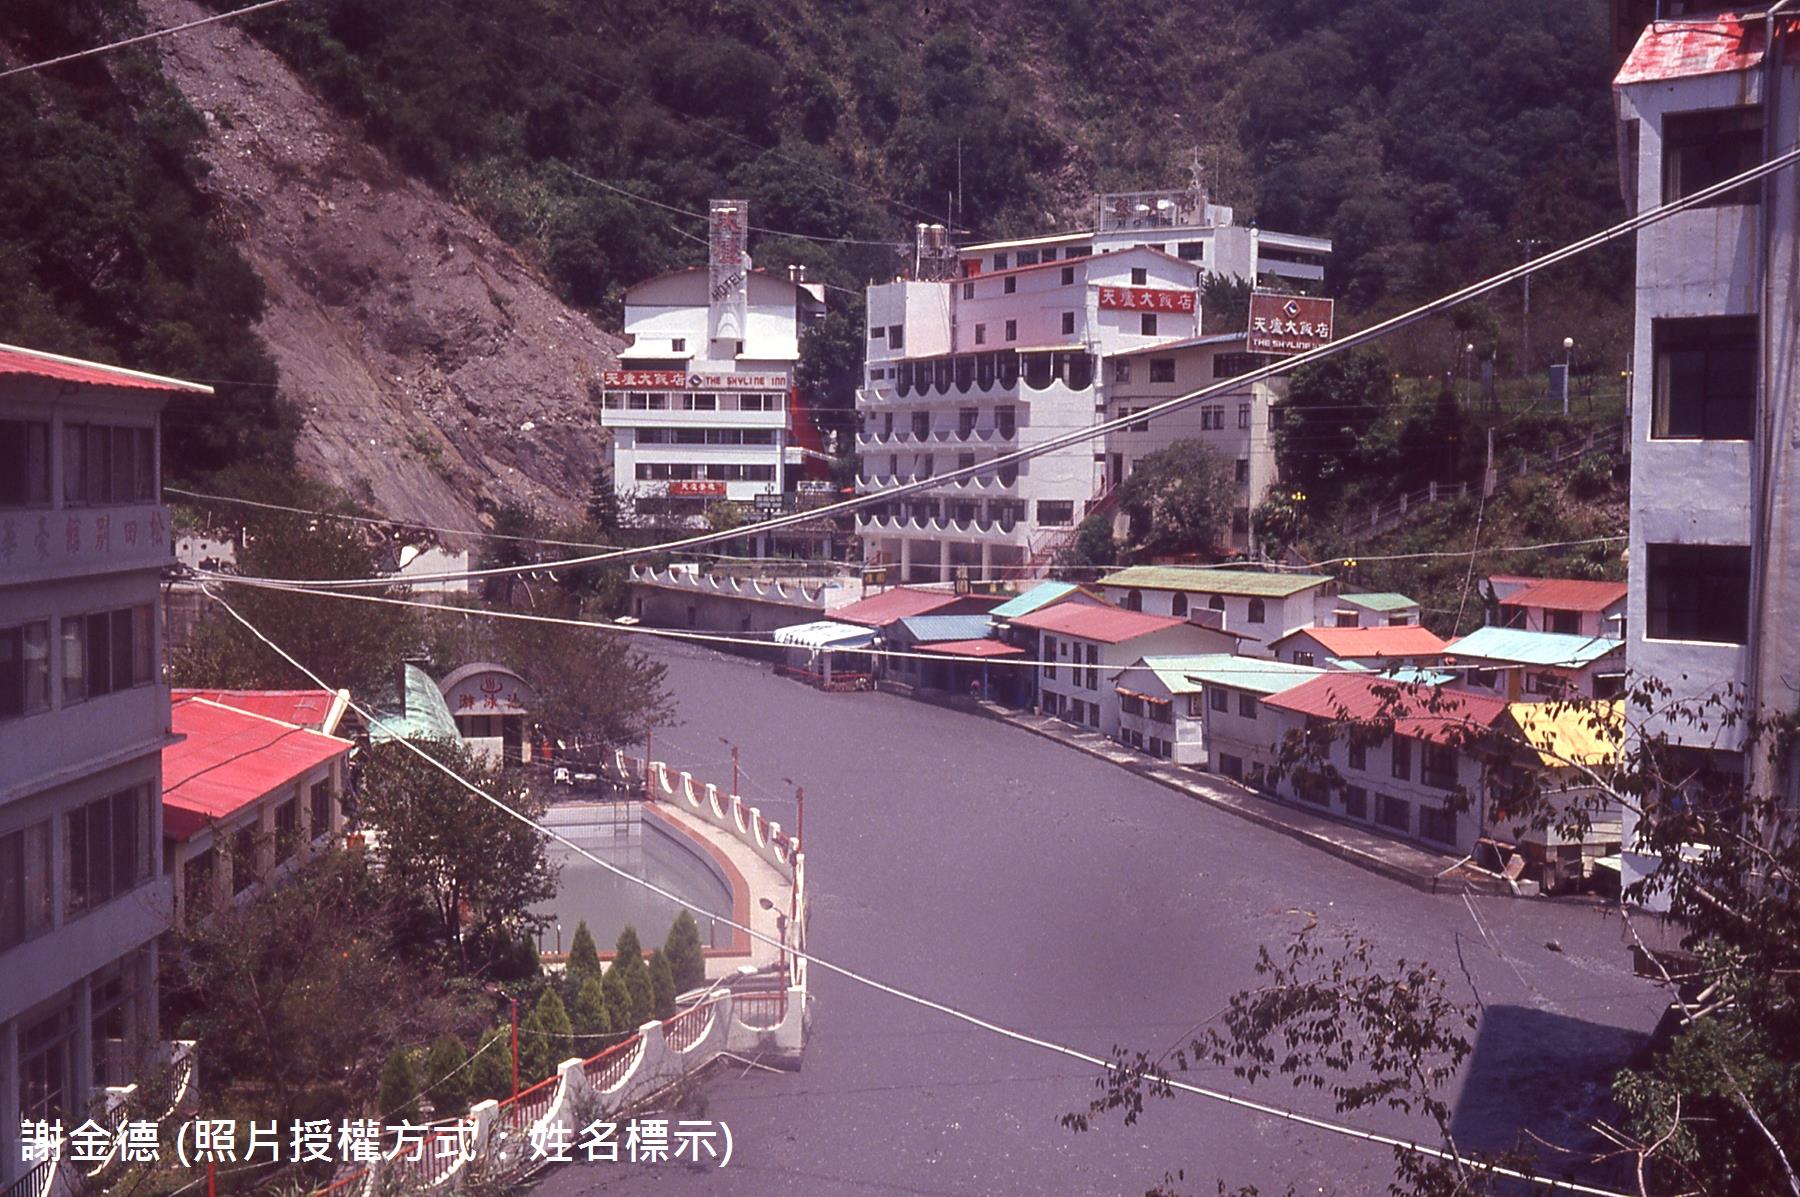 圖1 - 1994年道格颱風廬山吊橋上游災情(謝金德攝)